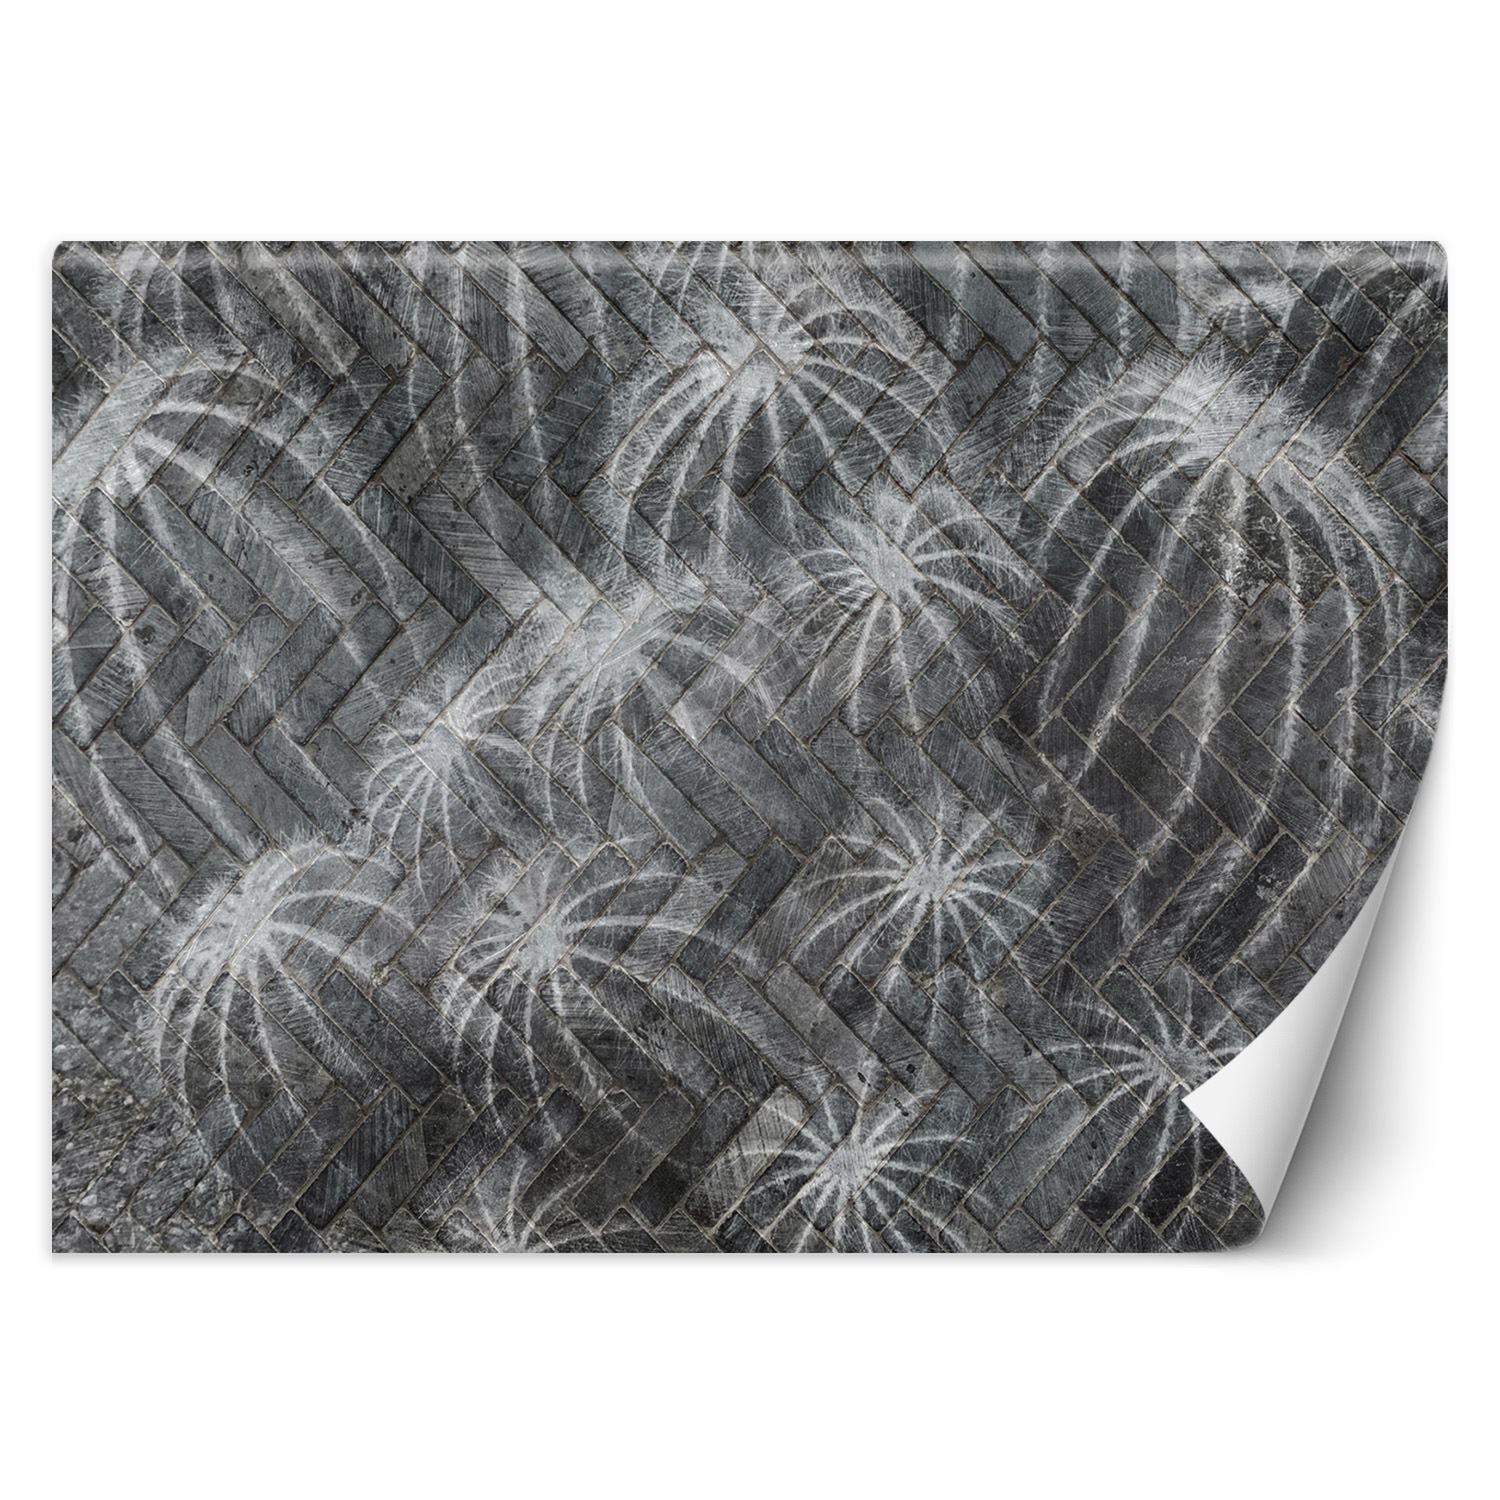 Trend24 – Behang – Cactussen In Grijs – Vliesbehang – Behang Woonkamer – Fotobehang – 254×184 cm – Incl. behanglijm